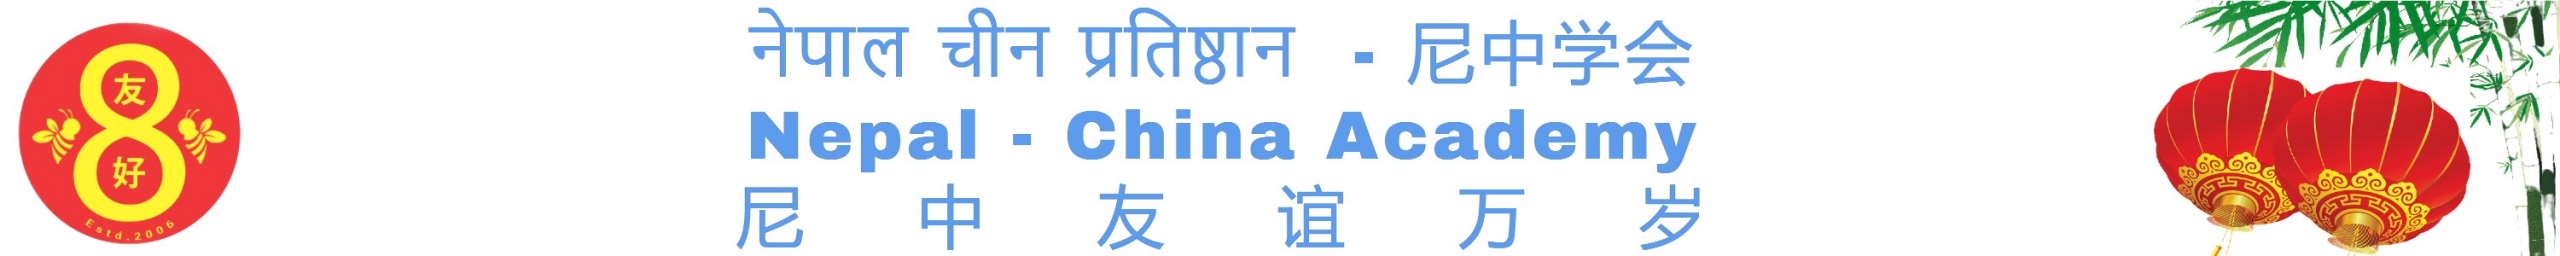 NEPAL-CHINA ACADEMY Logo